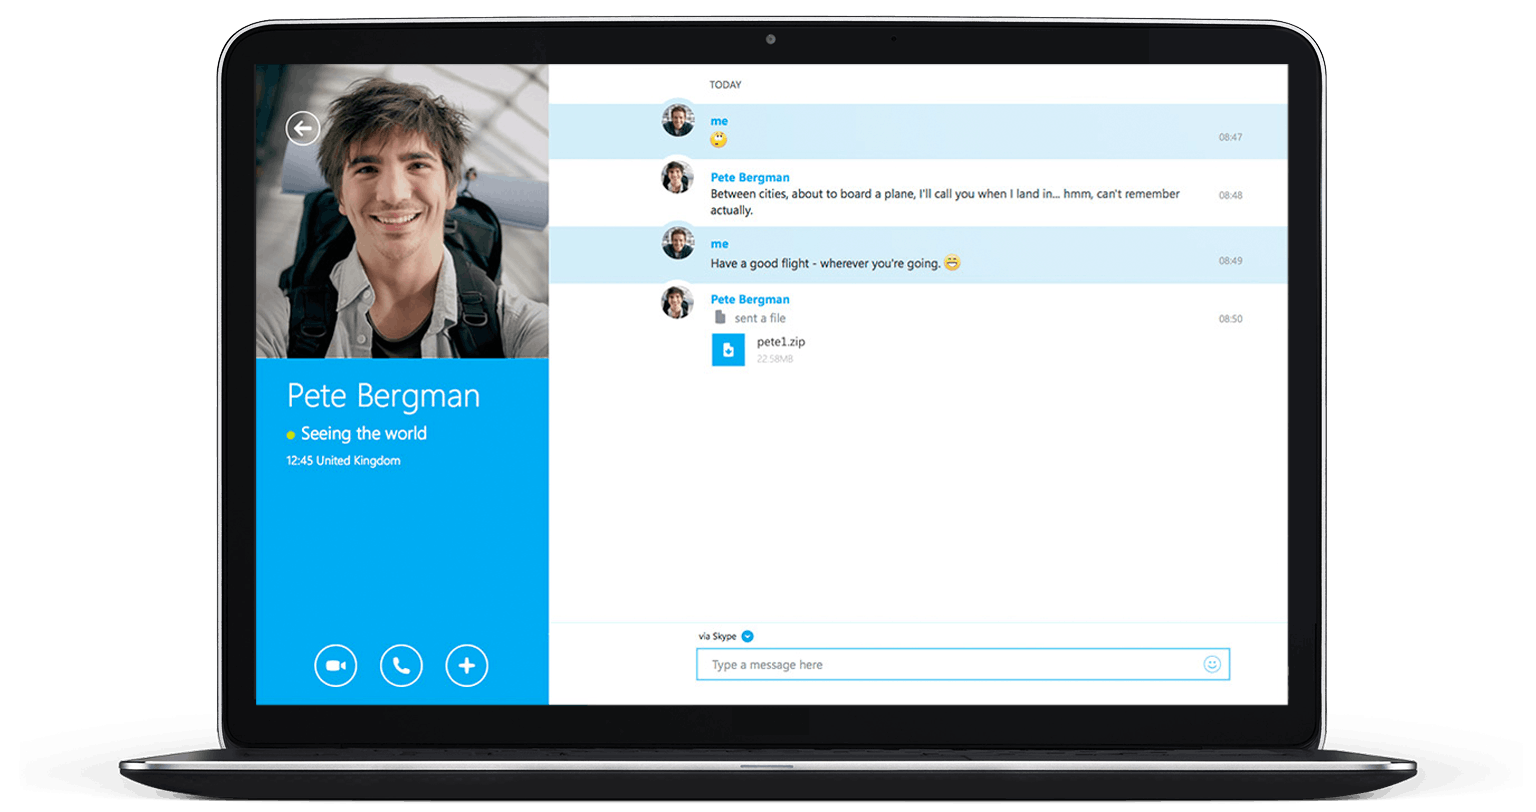 Las principales novedades de Skype en 2015